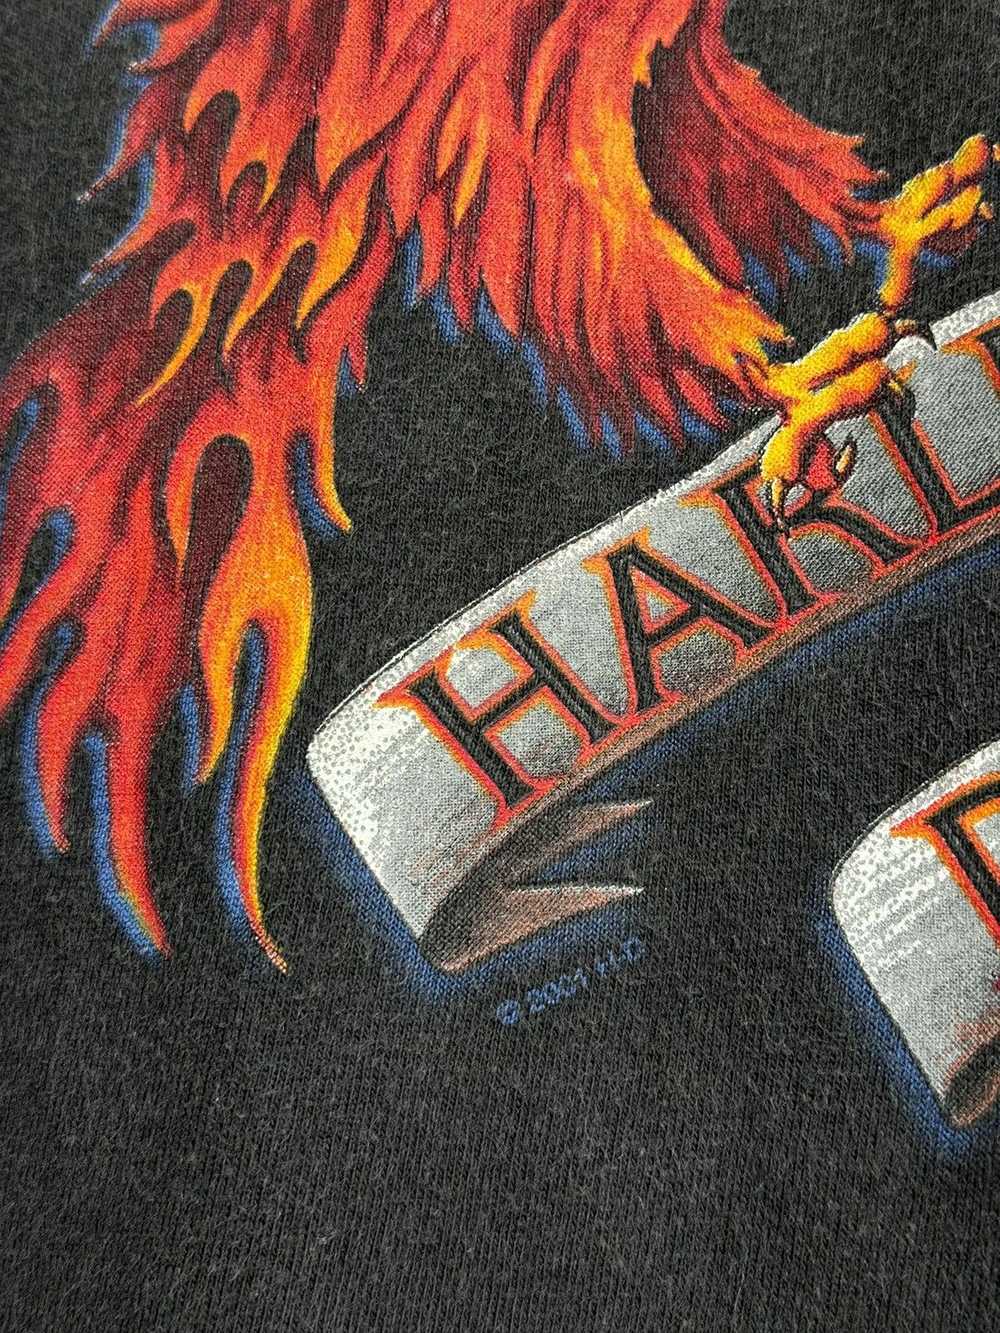 Band Tees × Harley Davidson × Vintage Vintage Har… - image 5